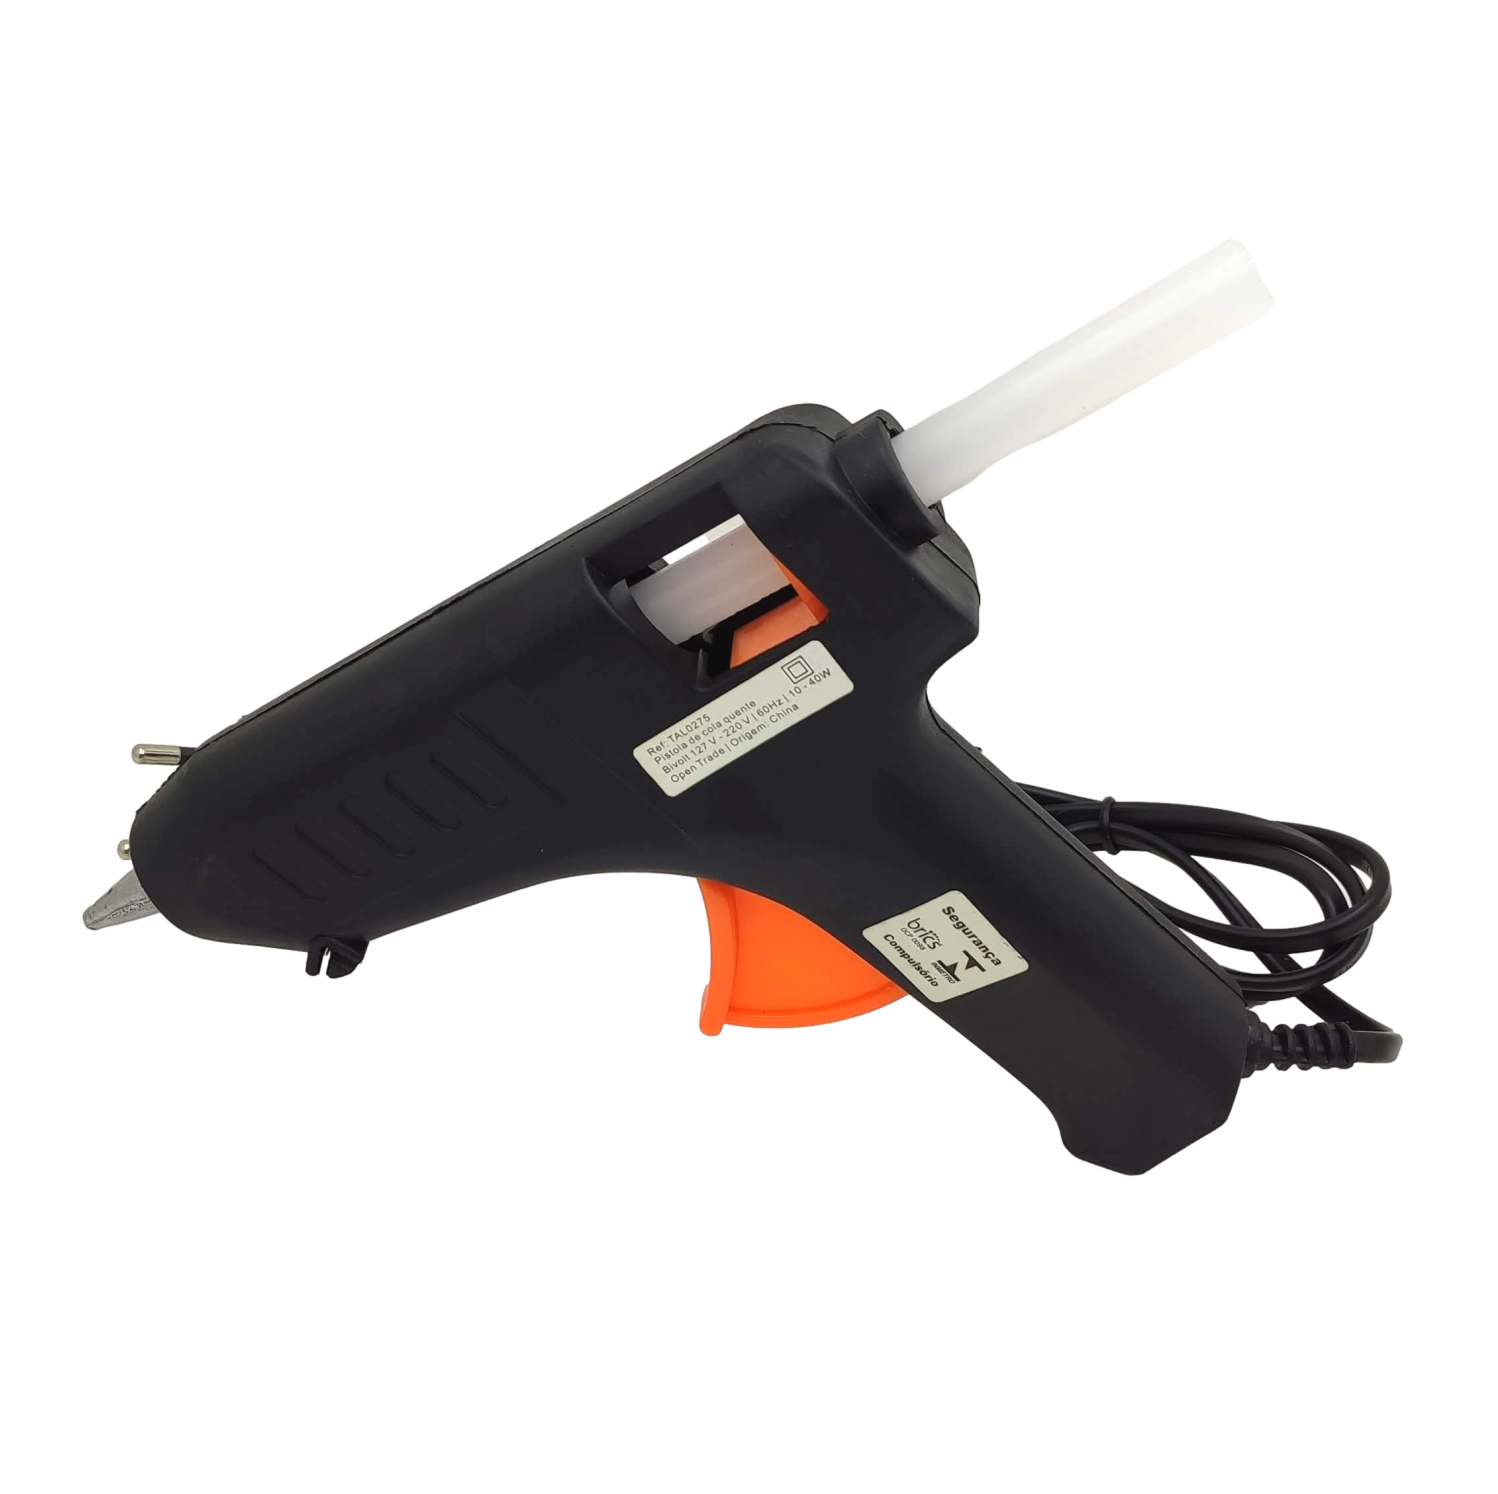 Pistola Maquina de Cola Quente Silicone 10-40w Bivolt Potente Aplicador - 1